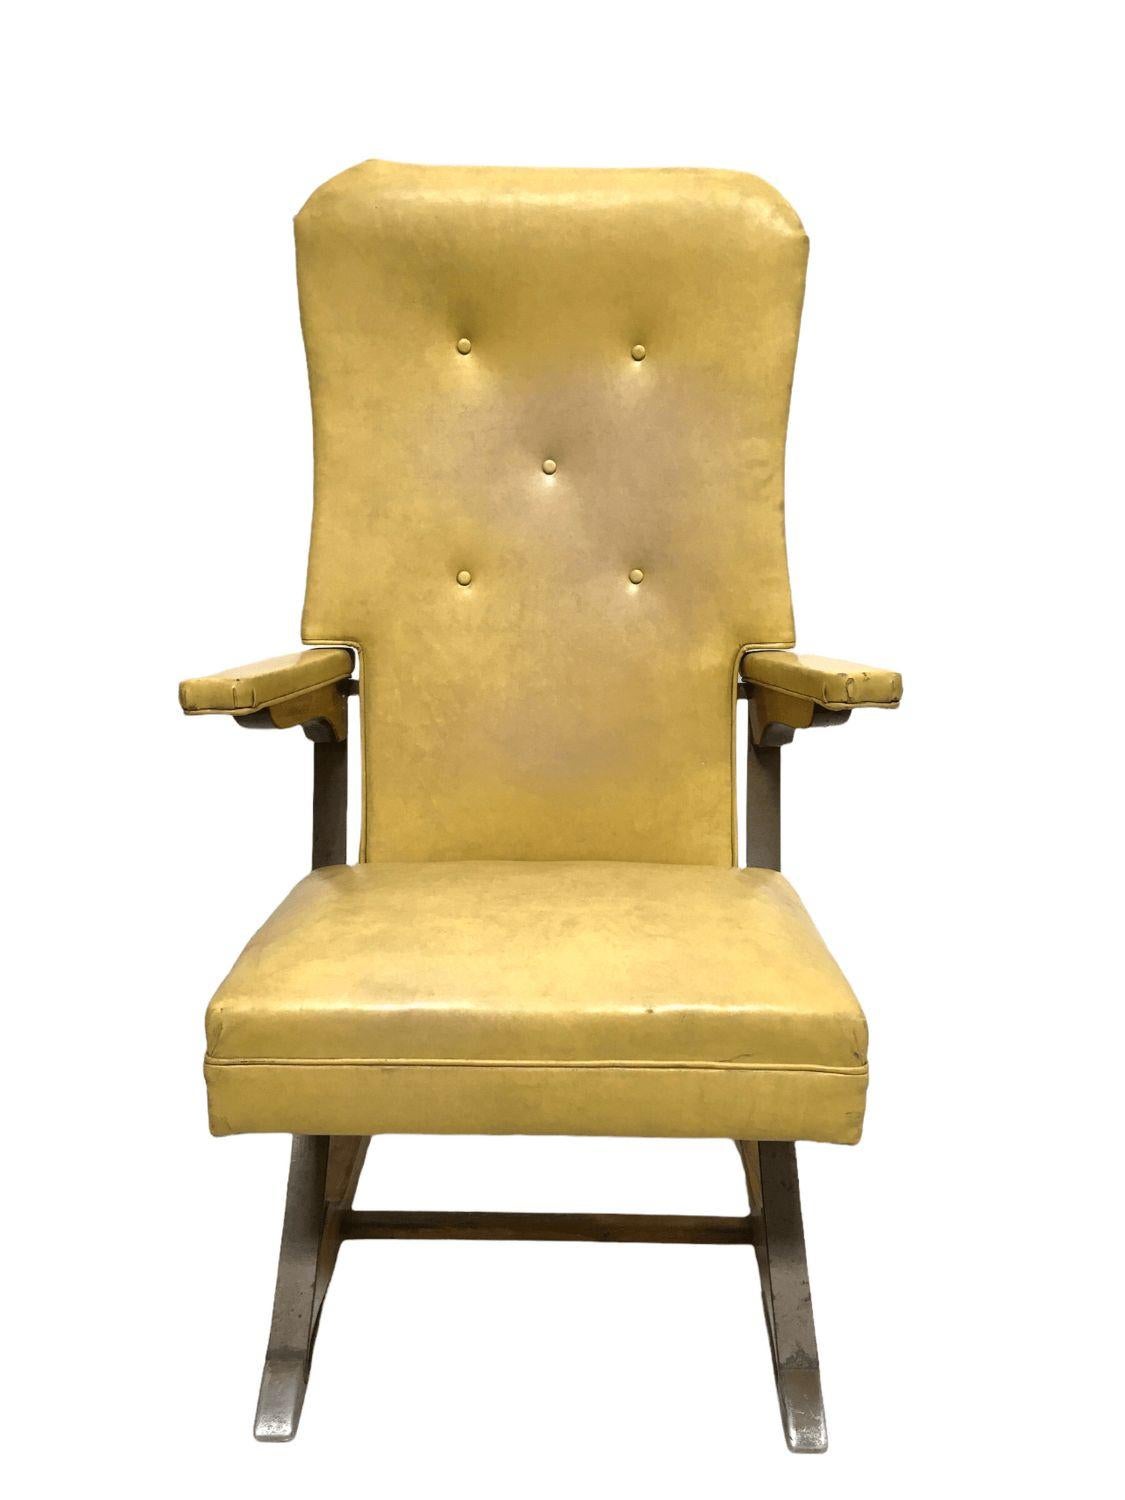 Vintage rock-a-chair cantilever rocker chair in Harvest Gold Vinyl. $1,450
 
Ce fauteuil à bascule cantilever de style Mid-Century présente un vinyle doré. Fabriqué à l'origine par Aldeuman Acres Manufacturing, son cadre combine le bois et le